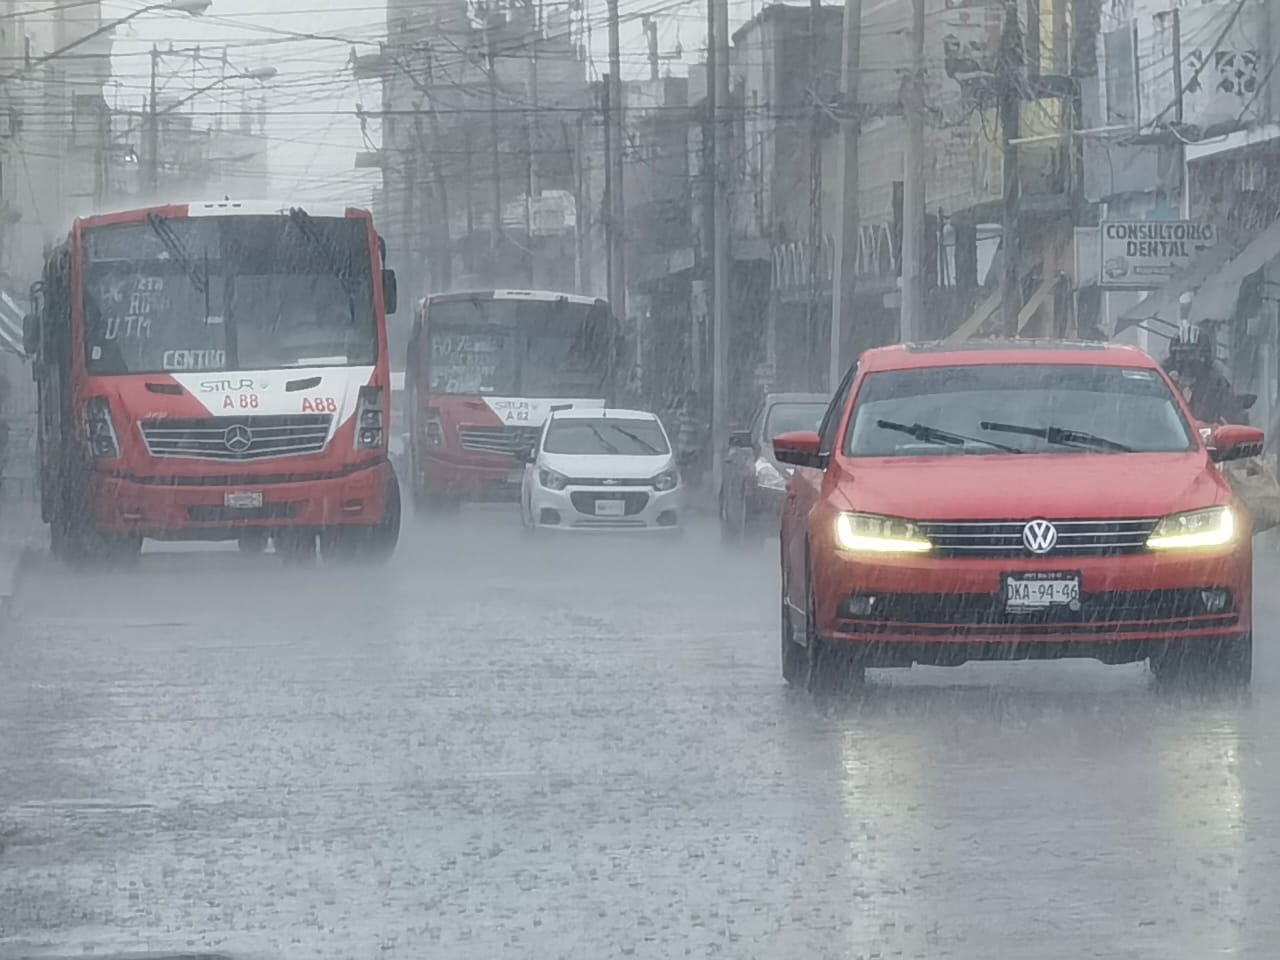 Tormenta Tropical Lisa: ¿Cómo afectará a la Península de Yucatán?